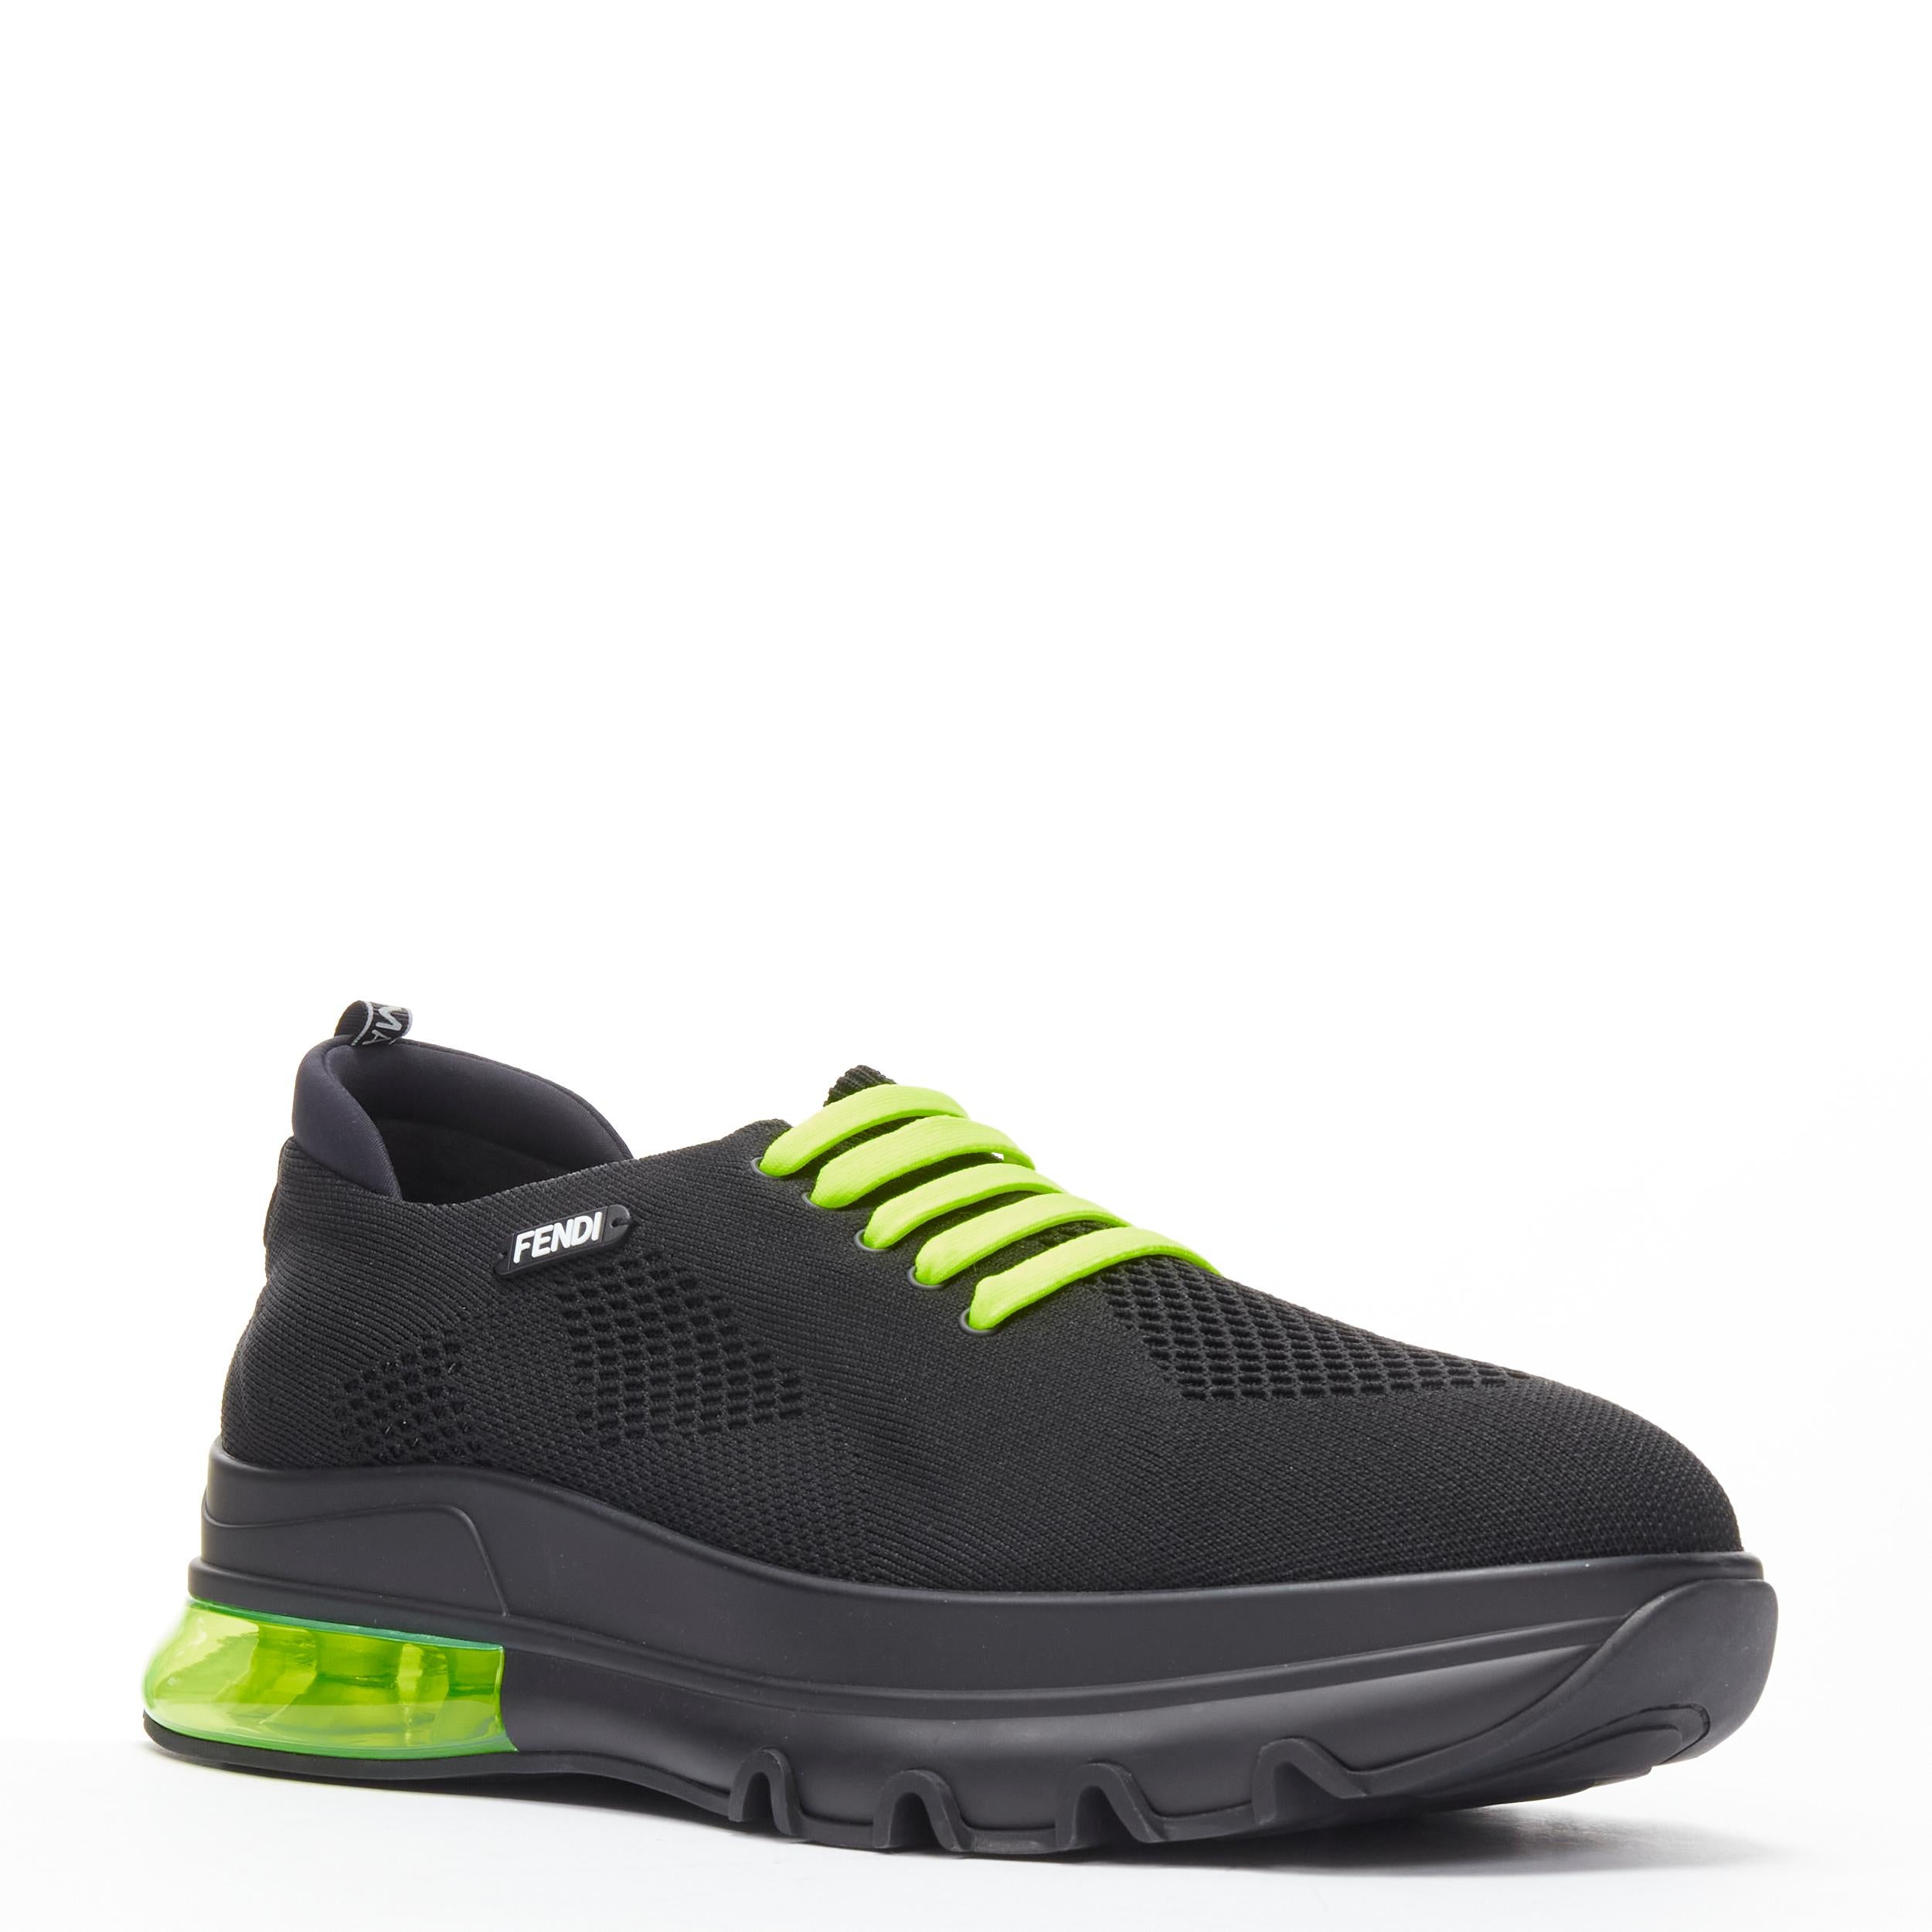 neu FENDI 2019 schwarz stricken neon gelb Luftsohle niedrigen Läufer Sneaker 7E1234 EU44 (Schwarz) im Angebot